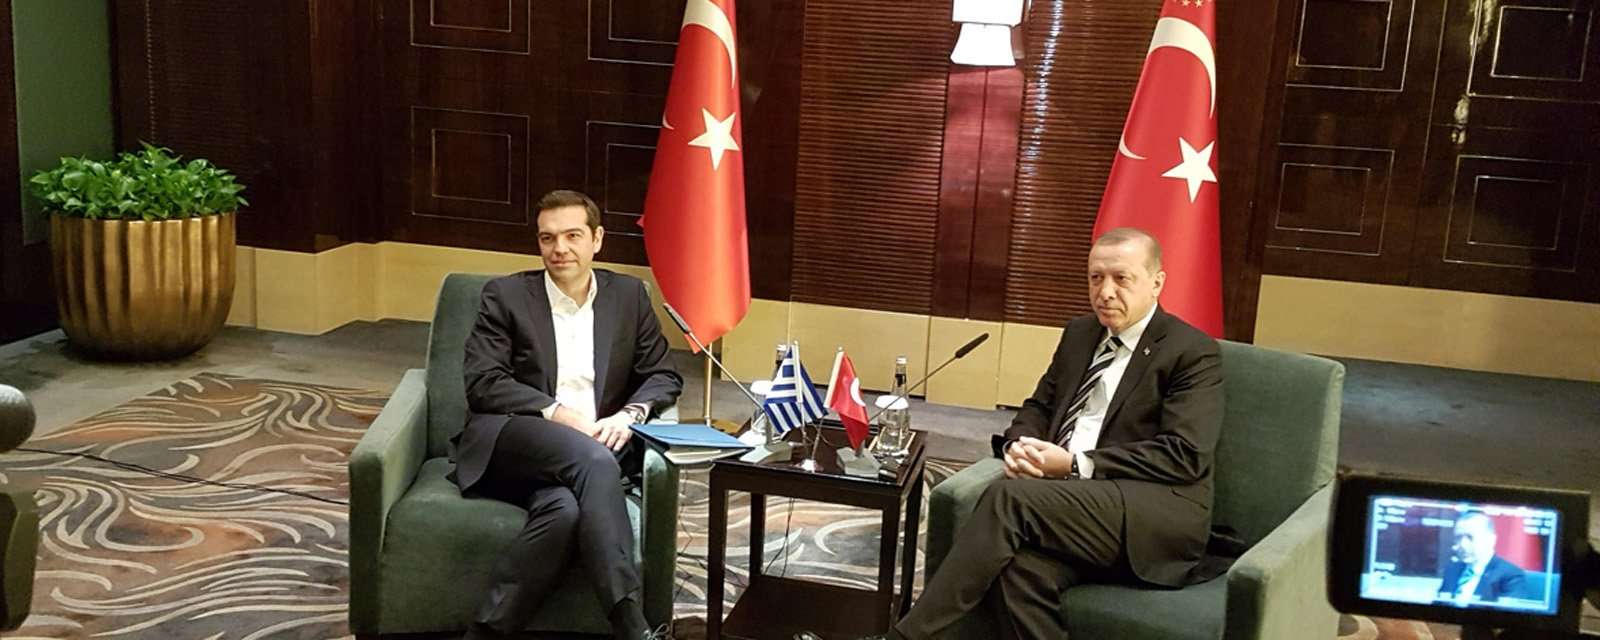 Περίεργη δήλωση Ερντογάν για τη Λωζάνη στη συνάντηση με Τσίπρα